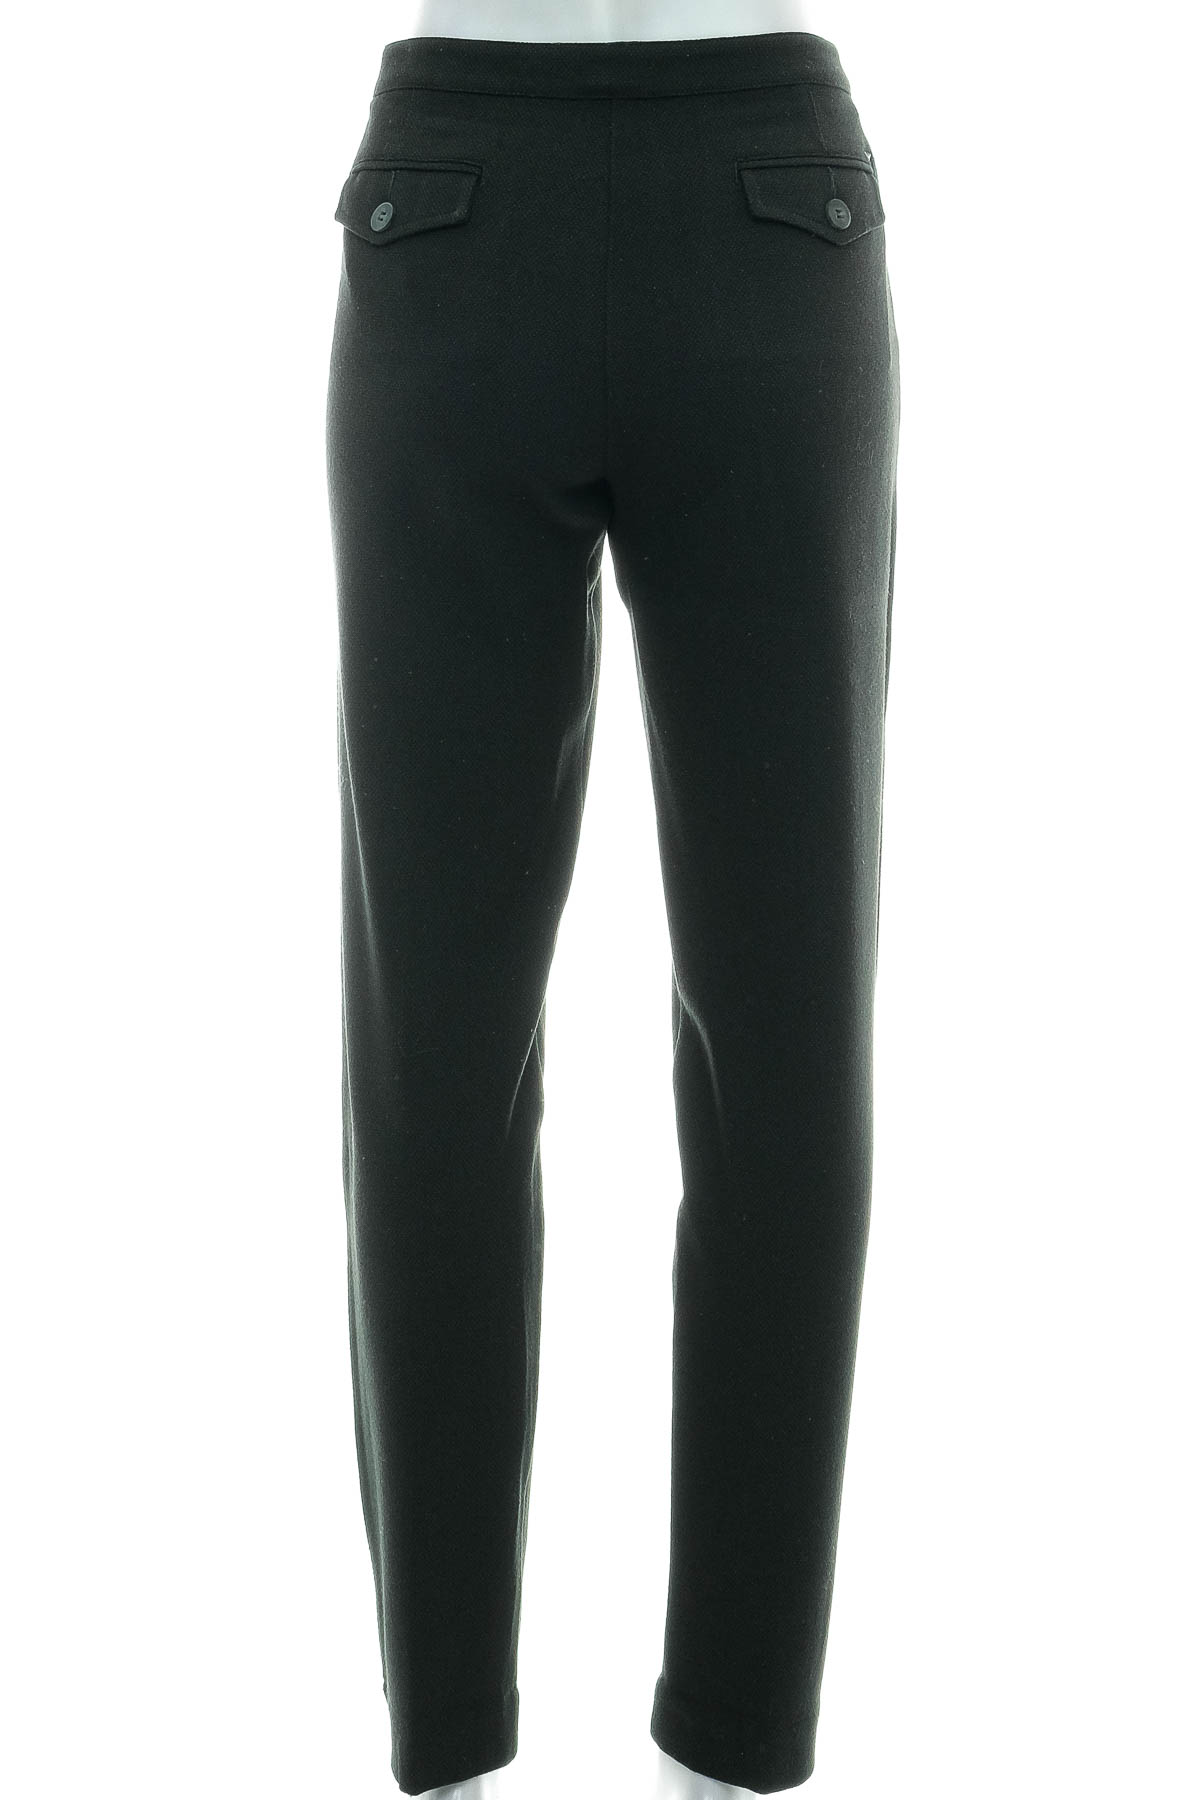 Spodnie damskie - Armani Jeans - 1